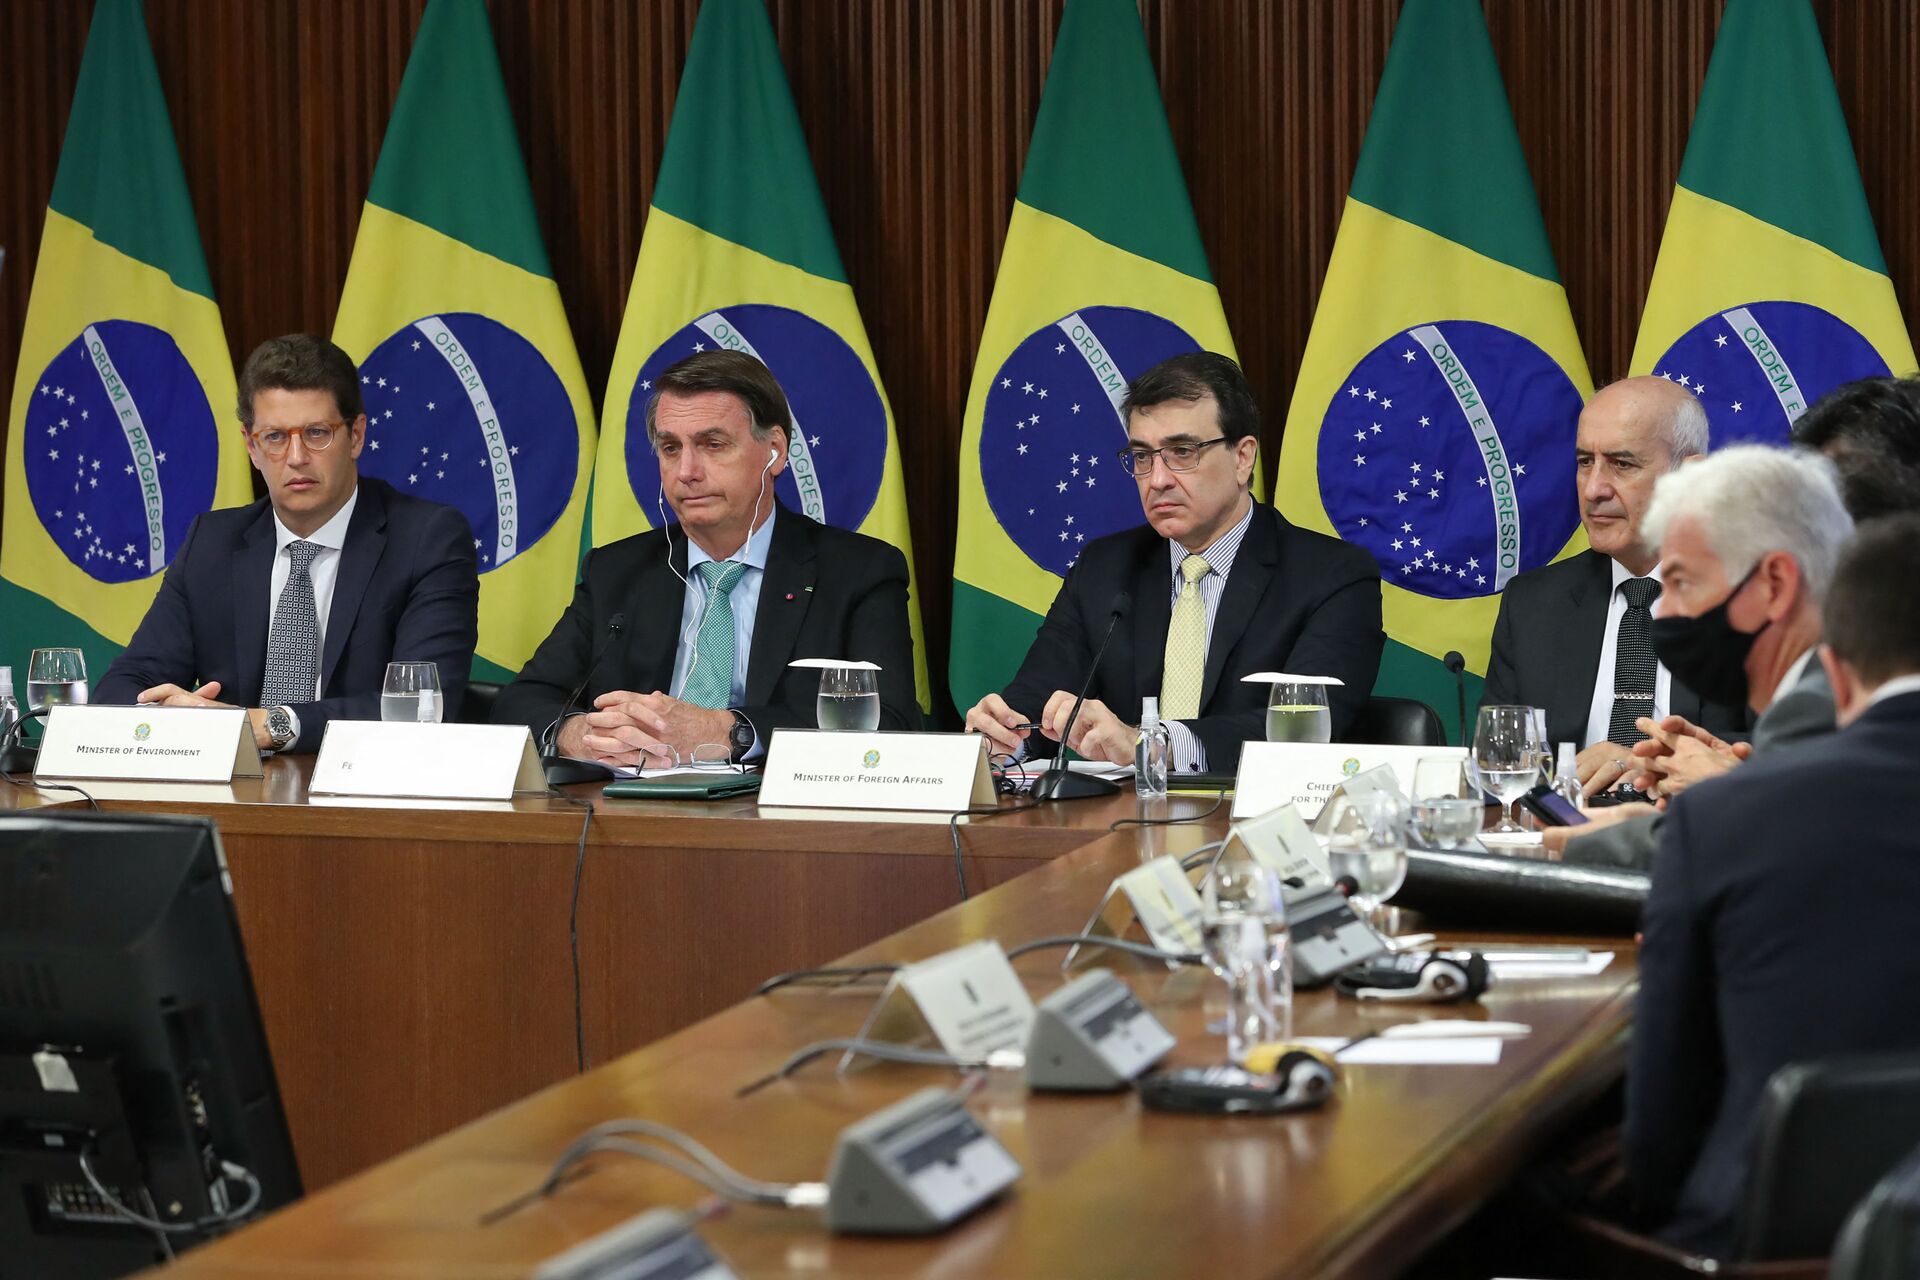 Programa 'Combustível do Futuro' pode gerar parceria Brasil-EUA, diz especialista - Sputnik Brasil, 1920, 24.04.2021